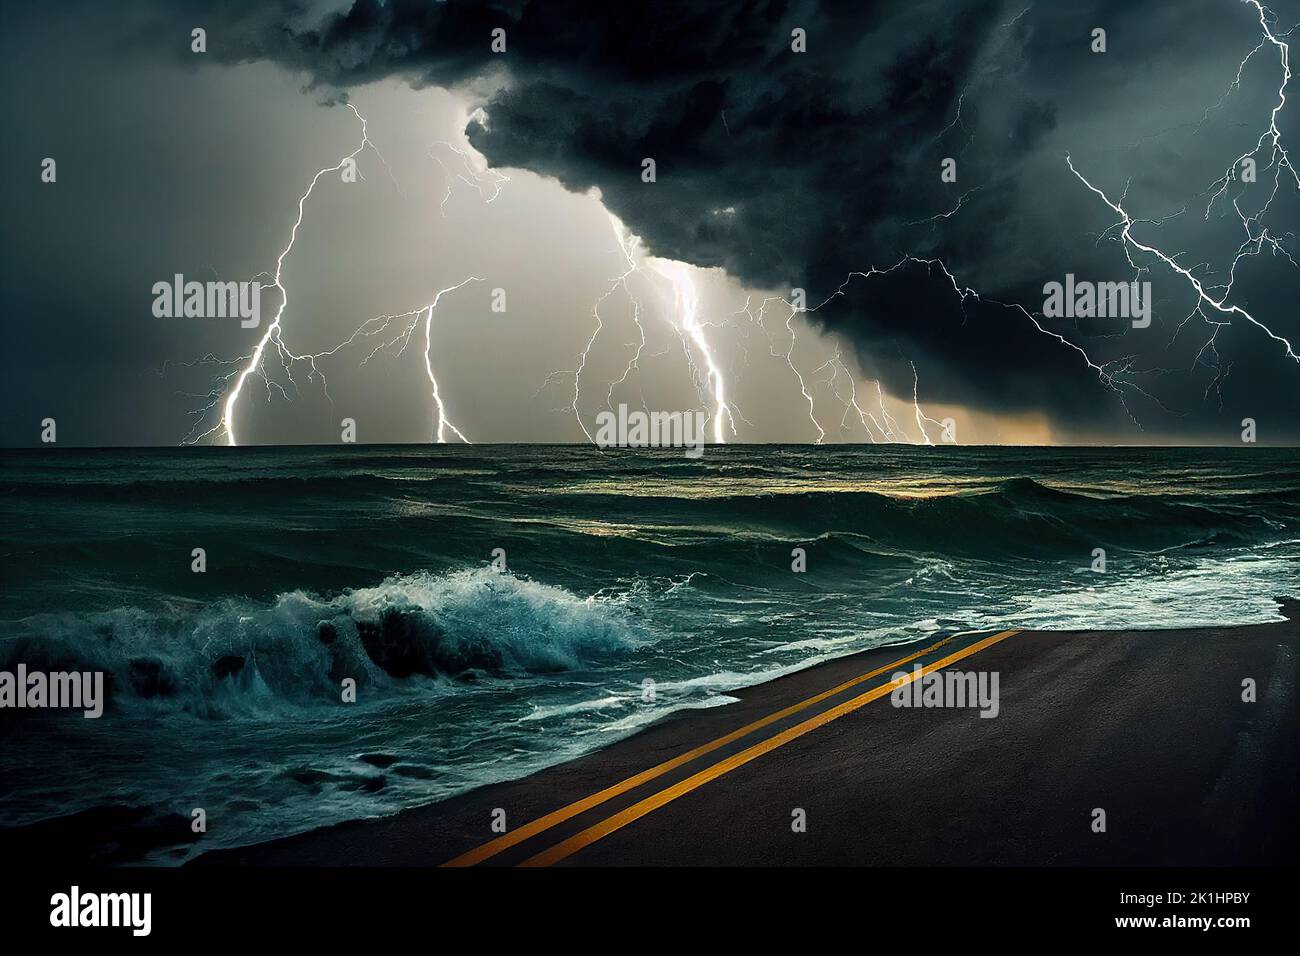 Une tempête tropicale dangereuse se produit dans un ciel nuageux et un océan orageux, causés par le changement climatique. 3D illustration et peinture numérique. Banque D'Images